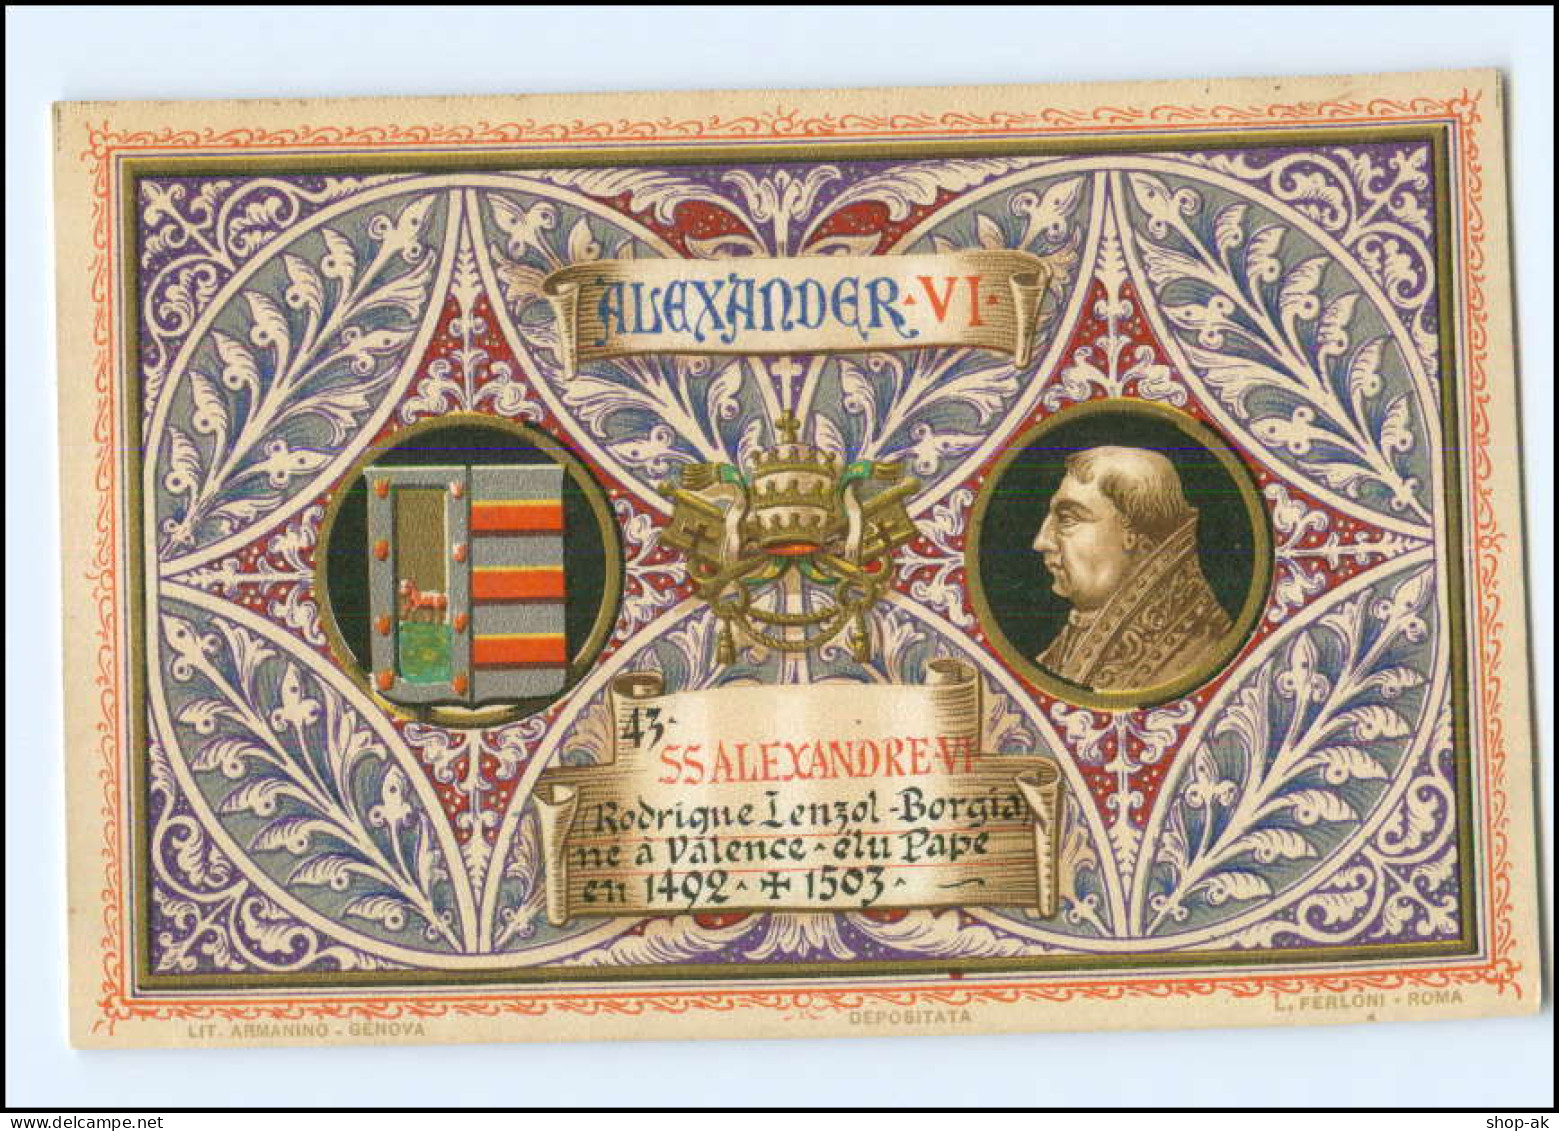 S2248/ Vatikan Papst Alexander VI  Litho AK  1903  Karte Nr. 43 Vatican  - Vatikanstadt